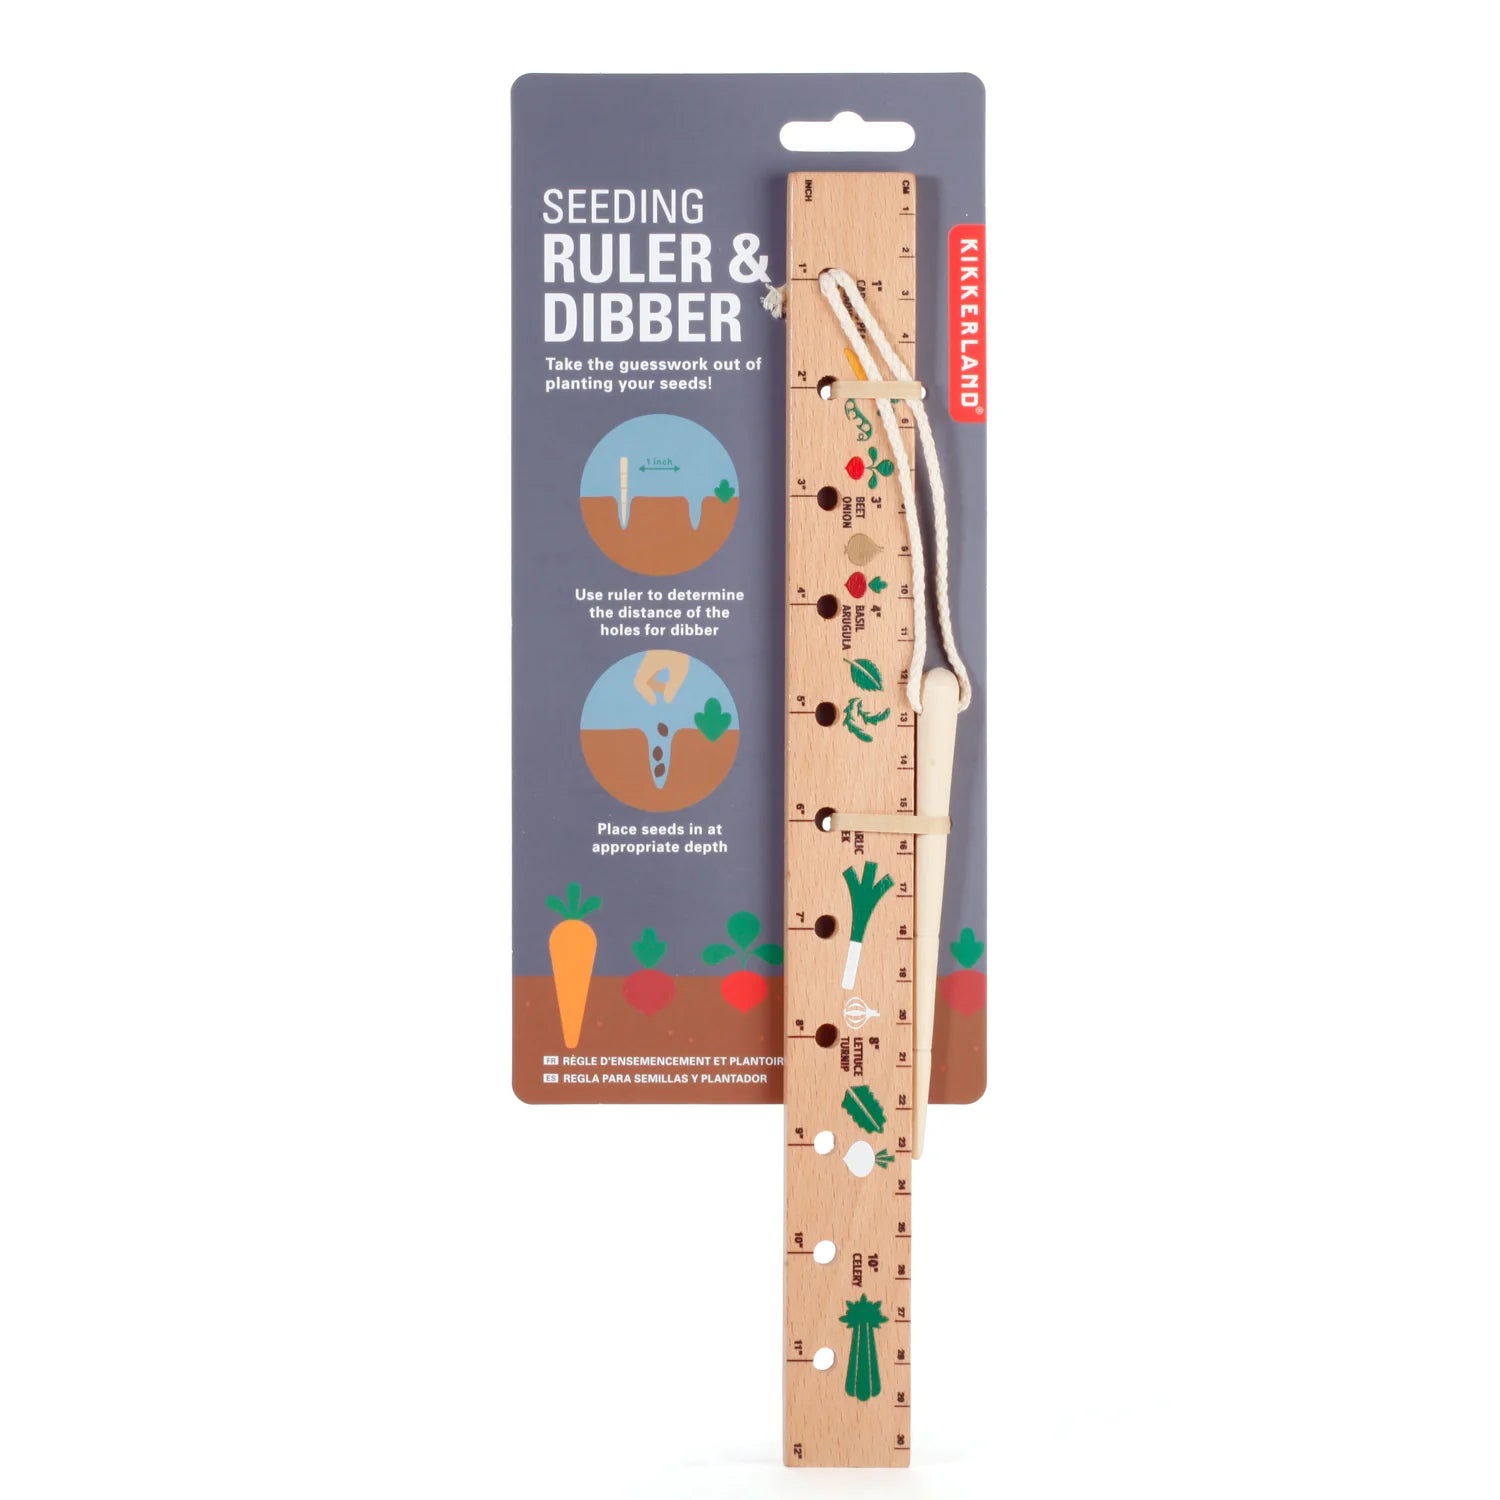 Seeding Ruler & Dibber